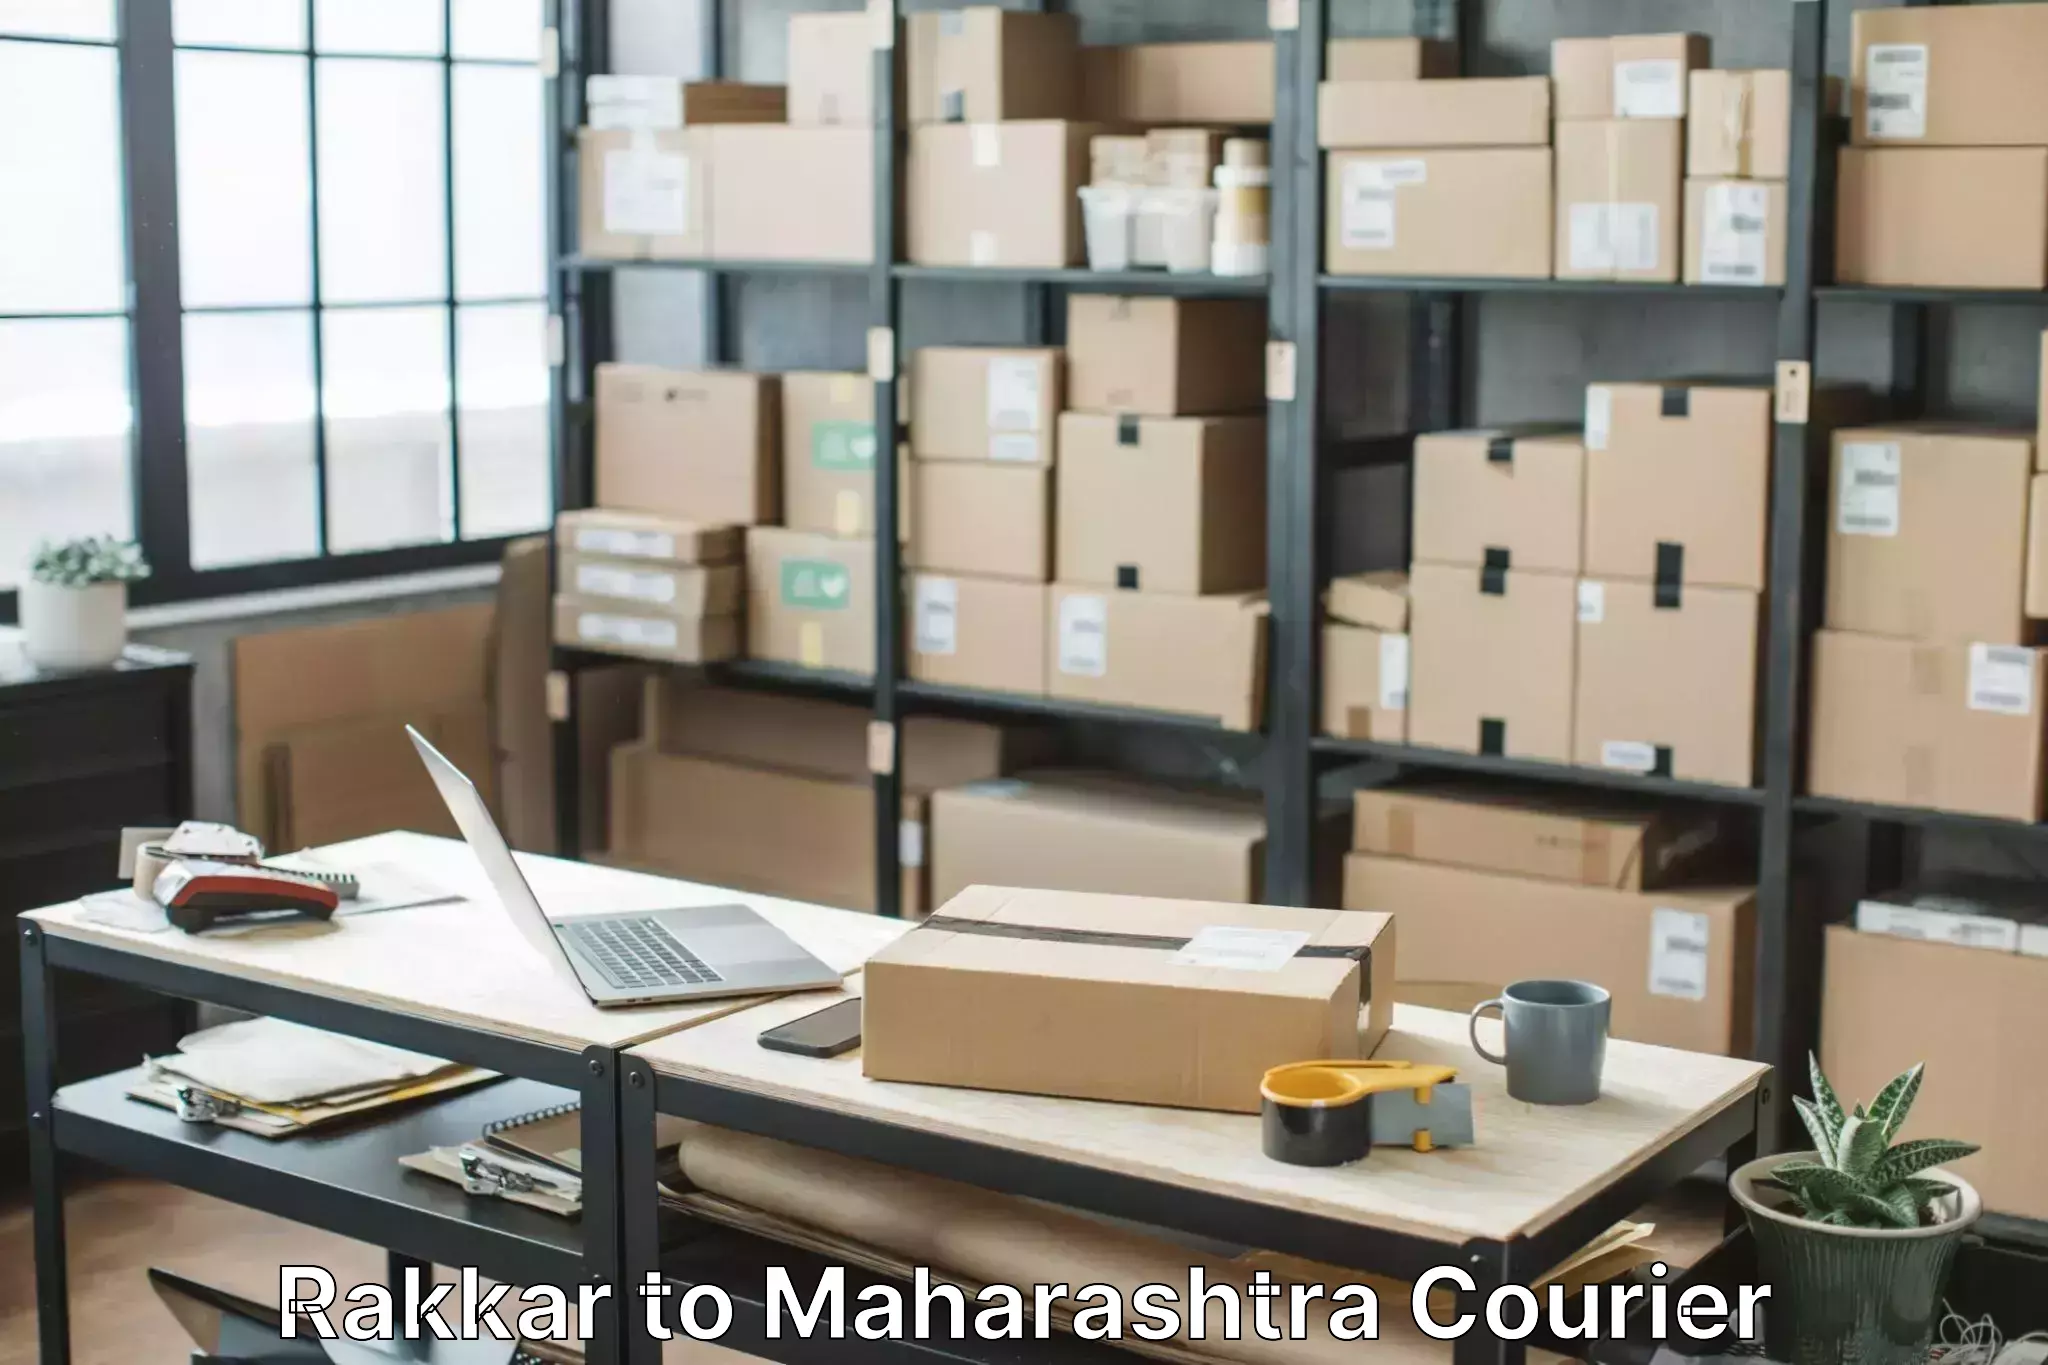 Home relocation experts Rakkar to Maharashtra